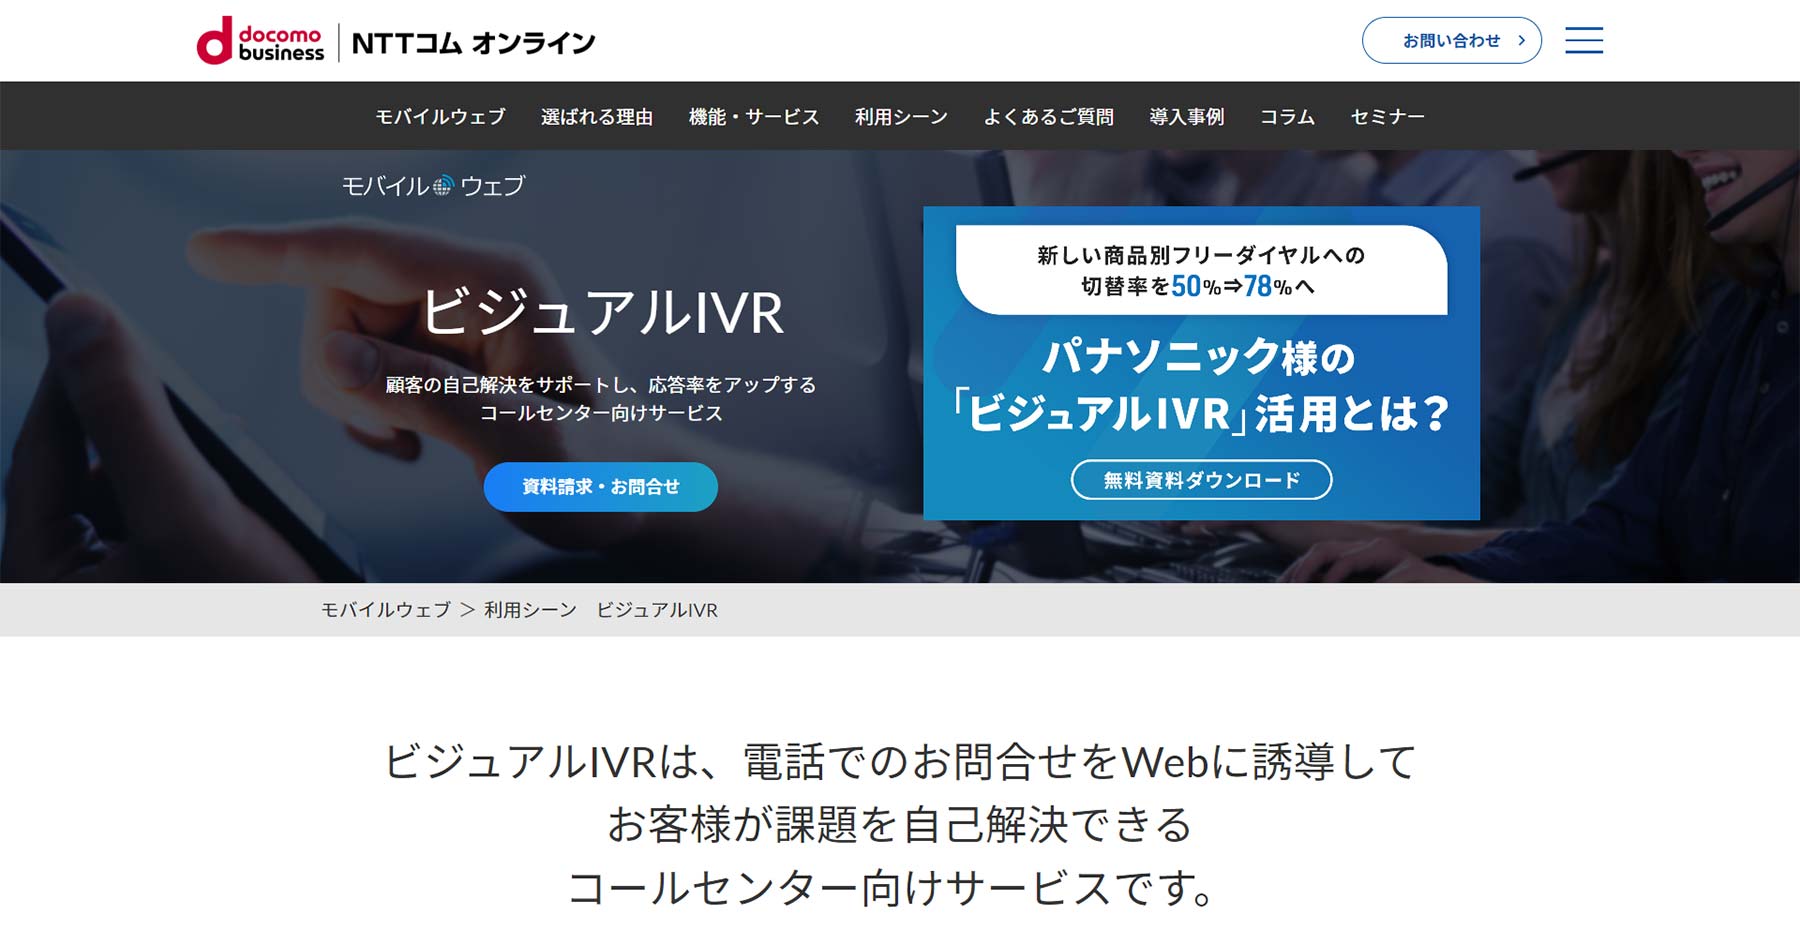 モバイルウェブ ビジュアルIVR公式Webサイト